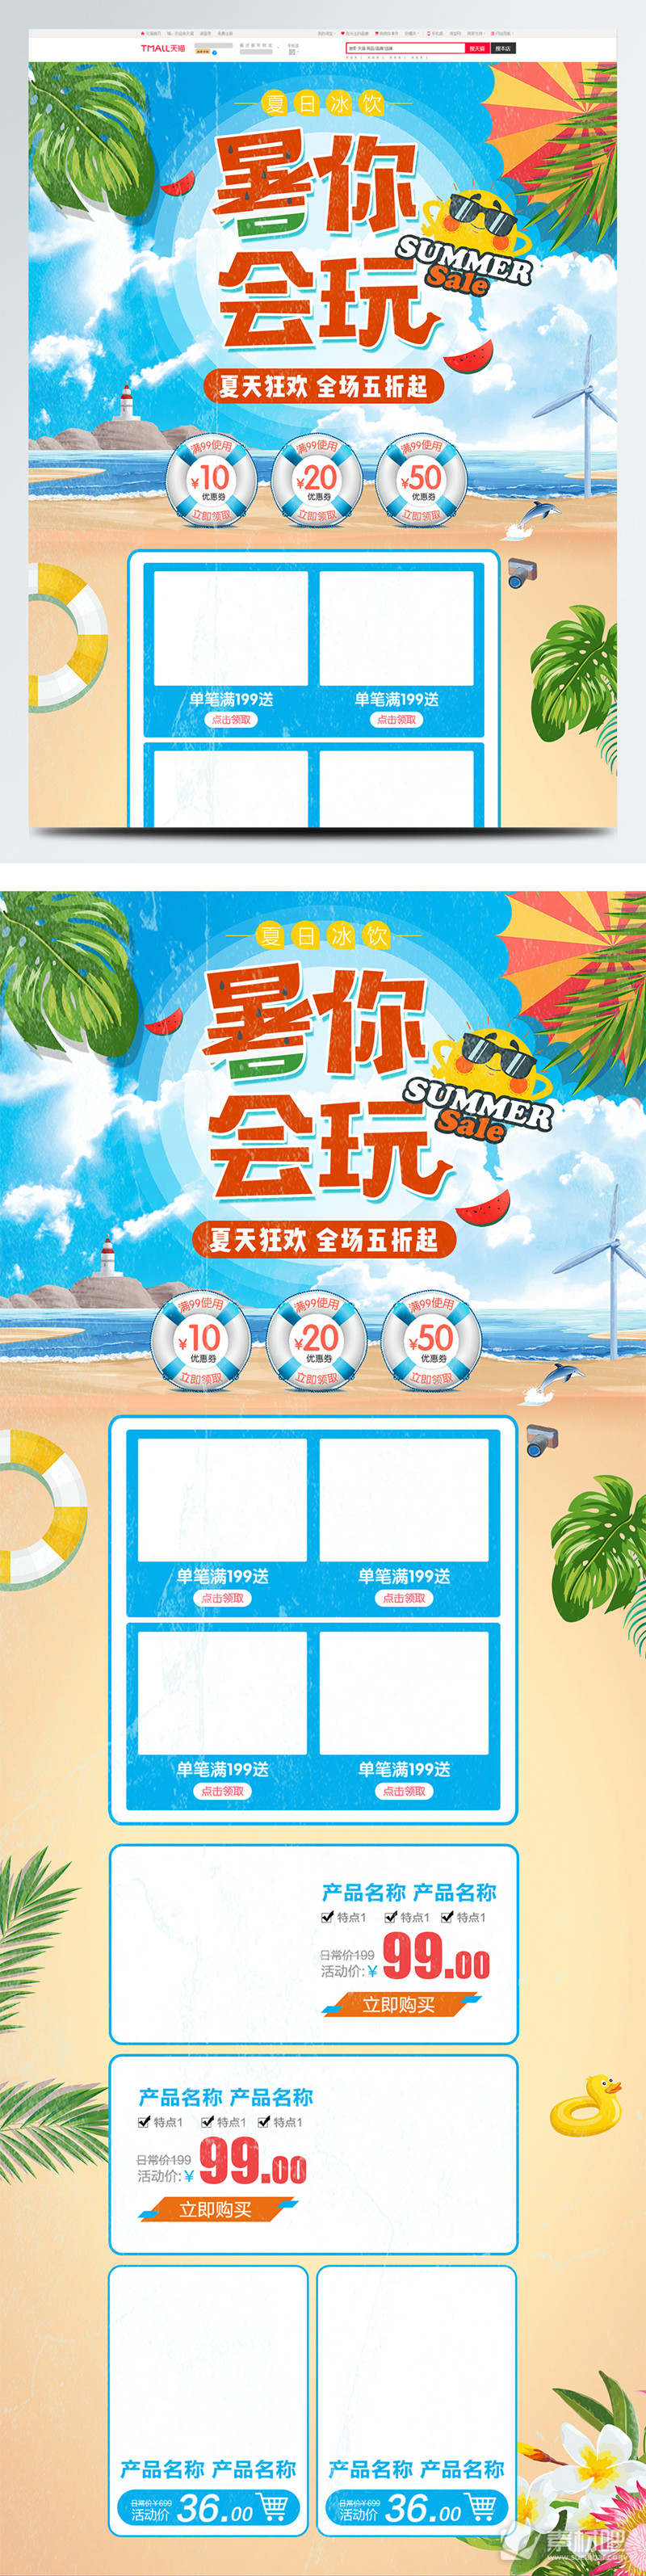 清新夏季夏日暑假狂欢淘宝首页